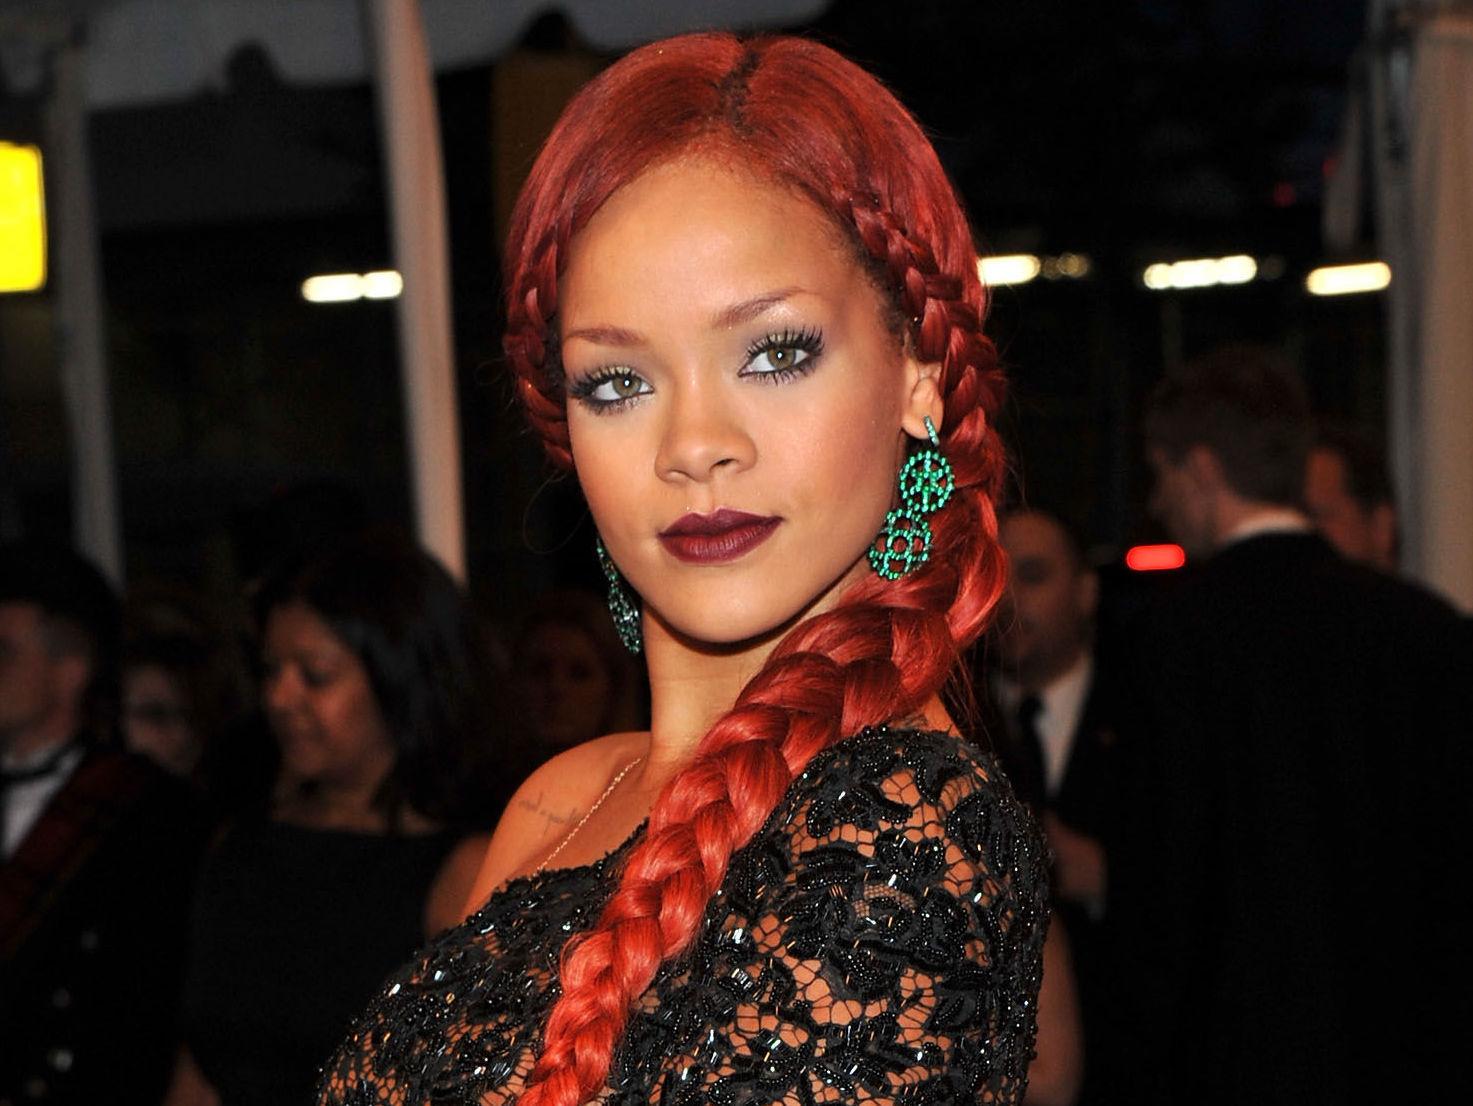 FLETTEFIN: Rihanna har vært innom de fleste hårfarger, og knall rødt kledde hun usedvanlig godt. Under Met-gallaen i 2011 så hun nesten ut som en eventyrprinsesse med en meterlang flette - og legg merke til de grønne øredobbene som står perfekt til den elektriske rødfargen. Foto: Getty Images